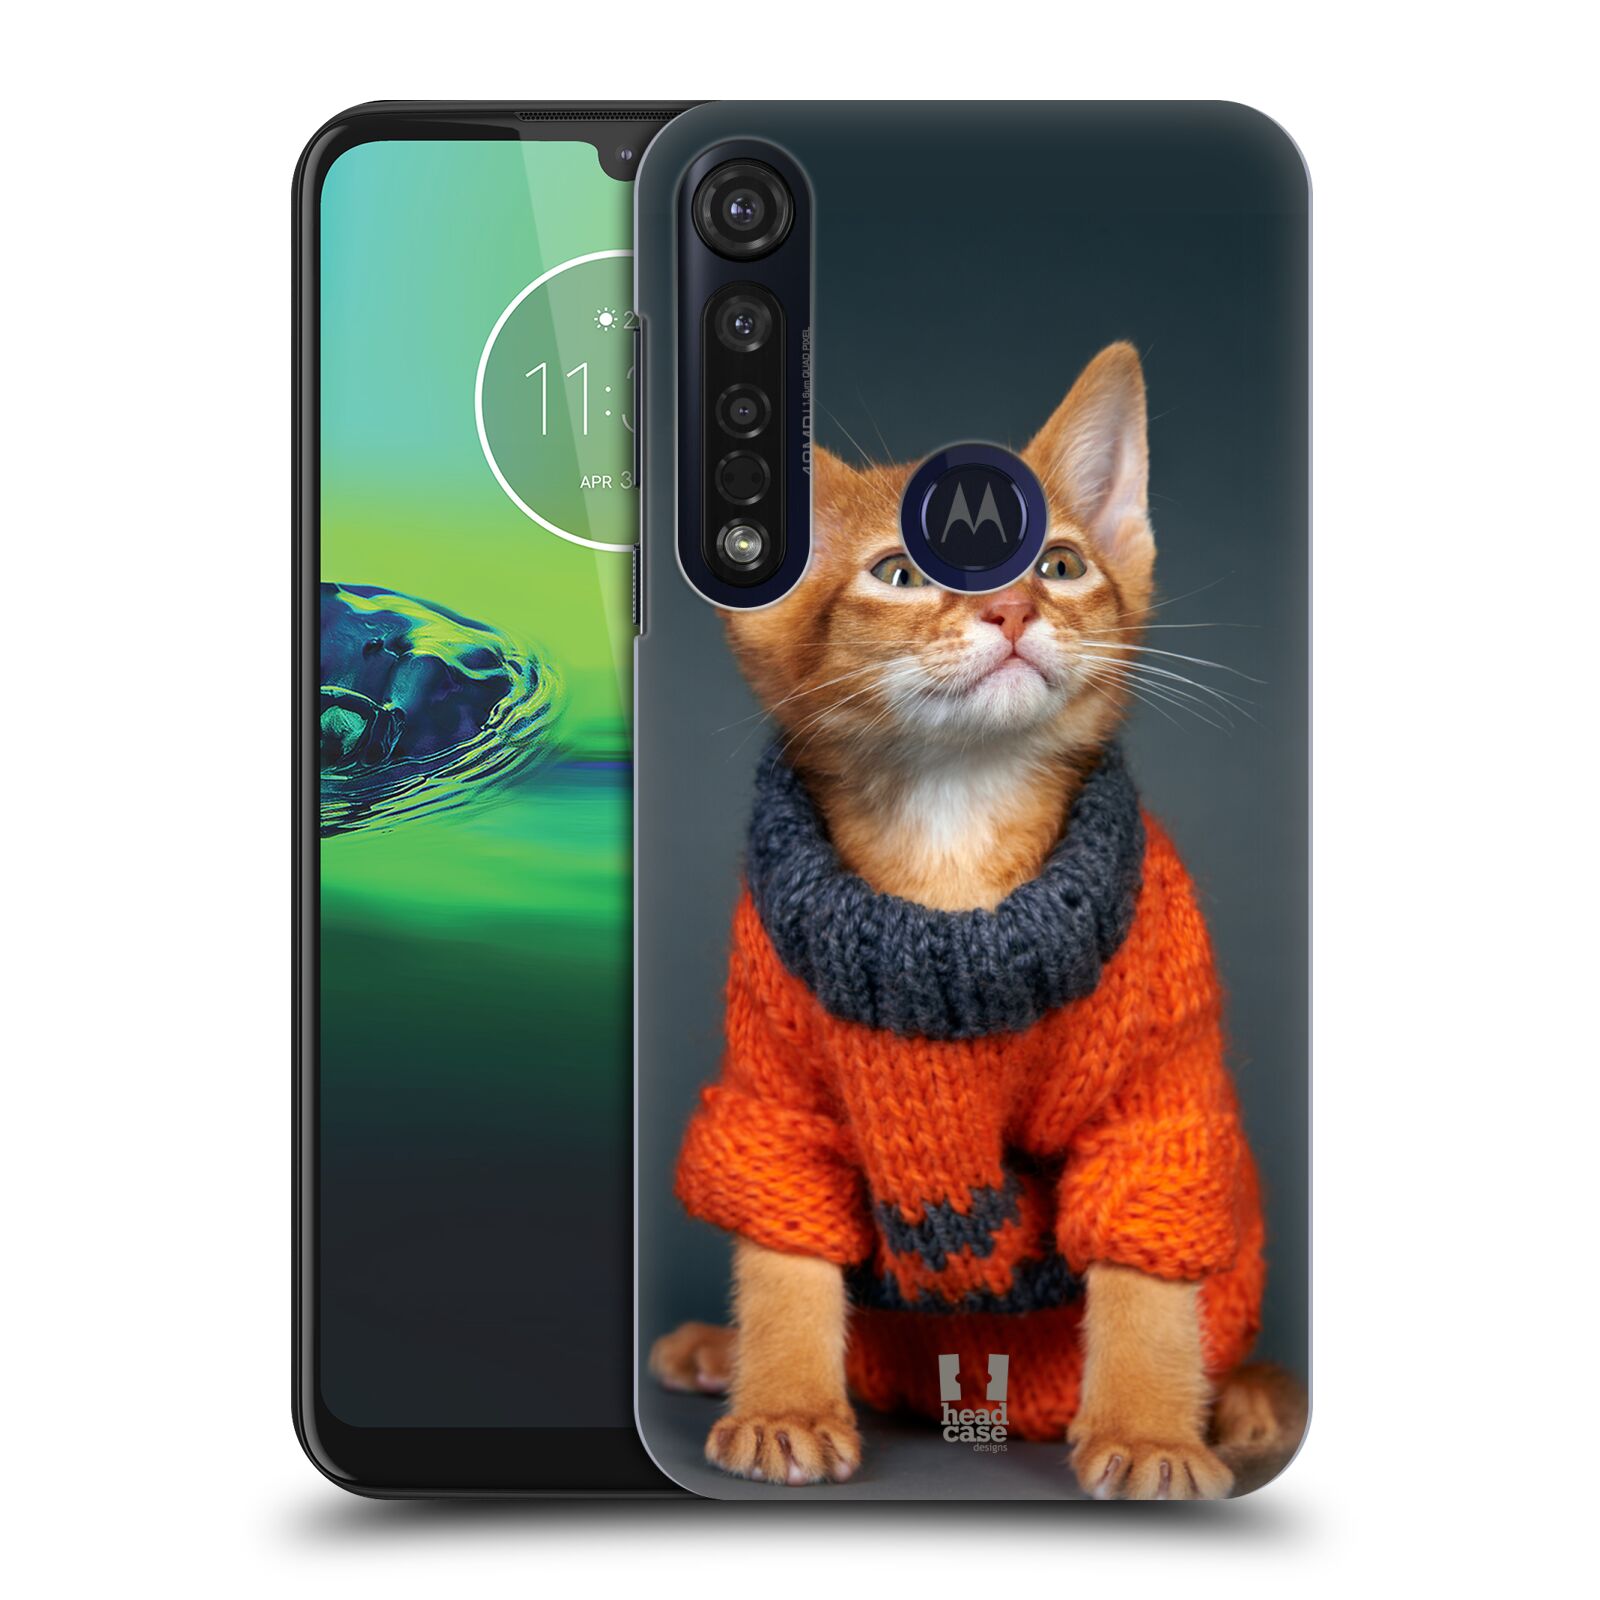 Pouzdro na mobil Motorola Moto G8 PLUS - HEAD CASE - vzor Legrační zvířátka kočička v oranžovém svetru